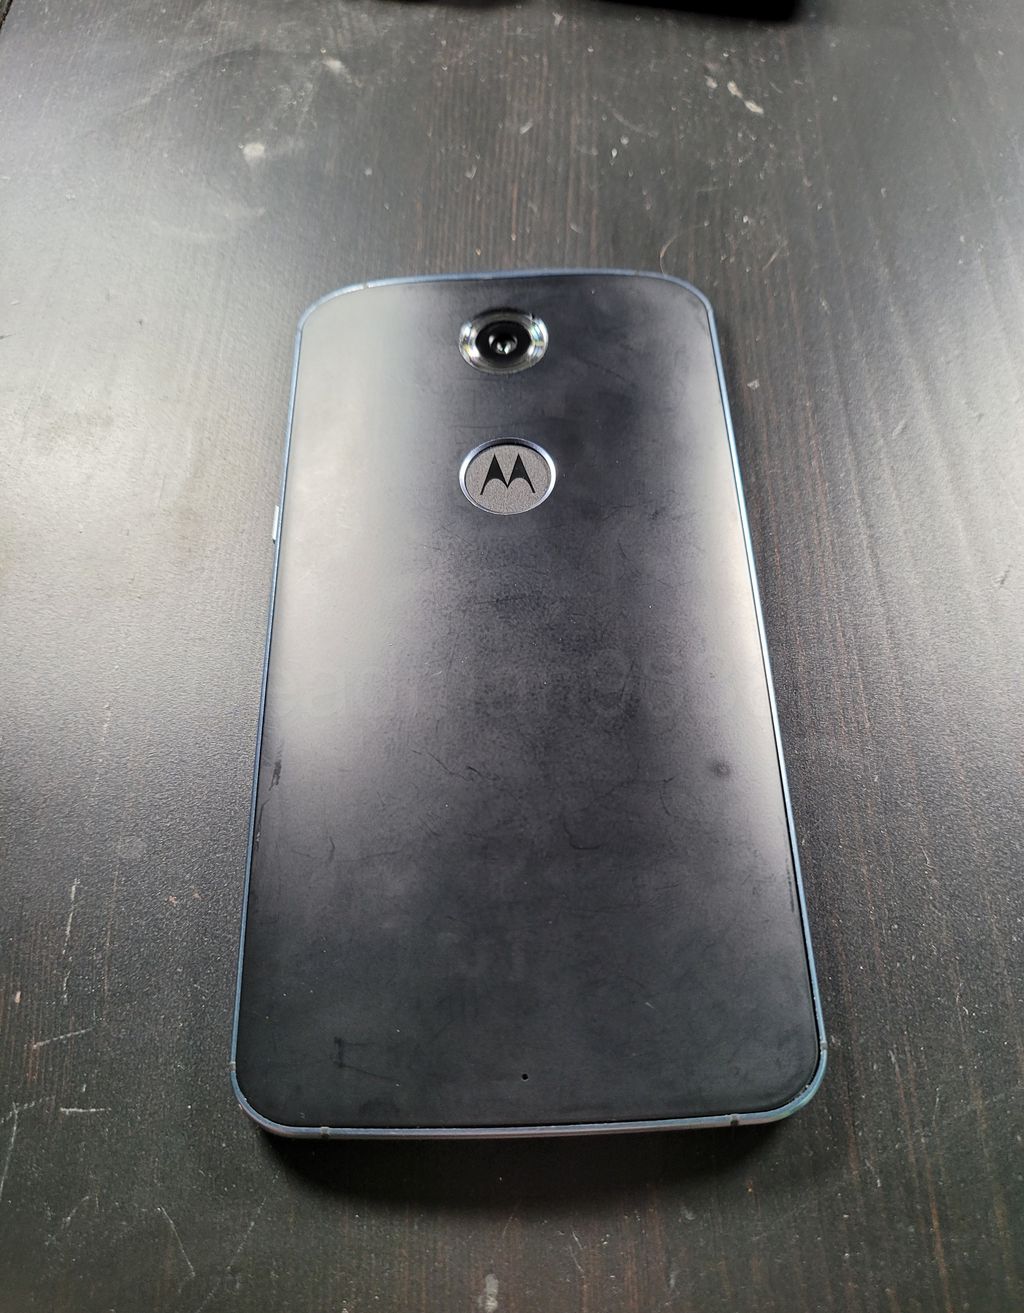 Protótipo traz sensor de impressões digitais no logo da Motorola (Imagem: Twitter/@Deadman_Android)